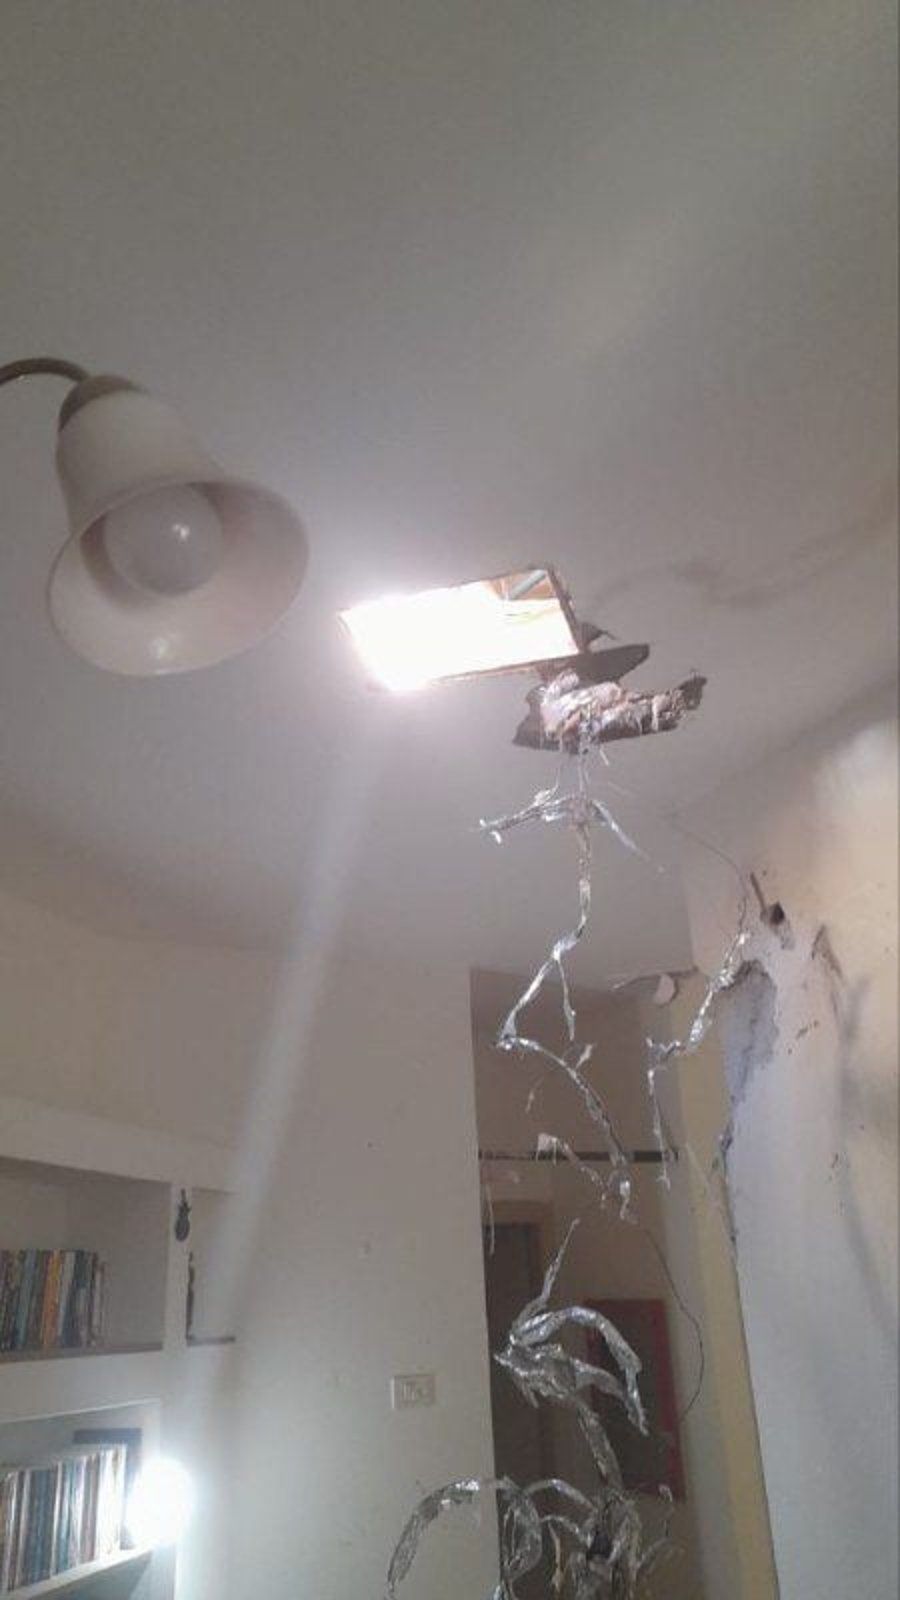 הרס רב בדירה בעוטף עזה כתוצאה מהפגיעה הישירה